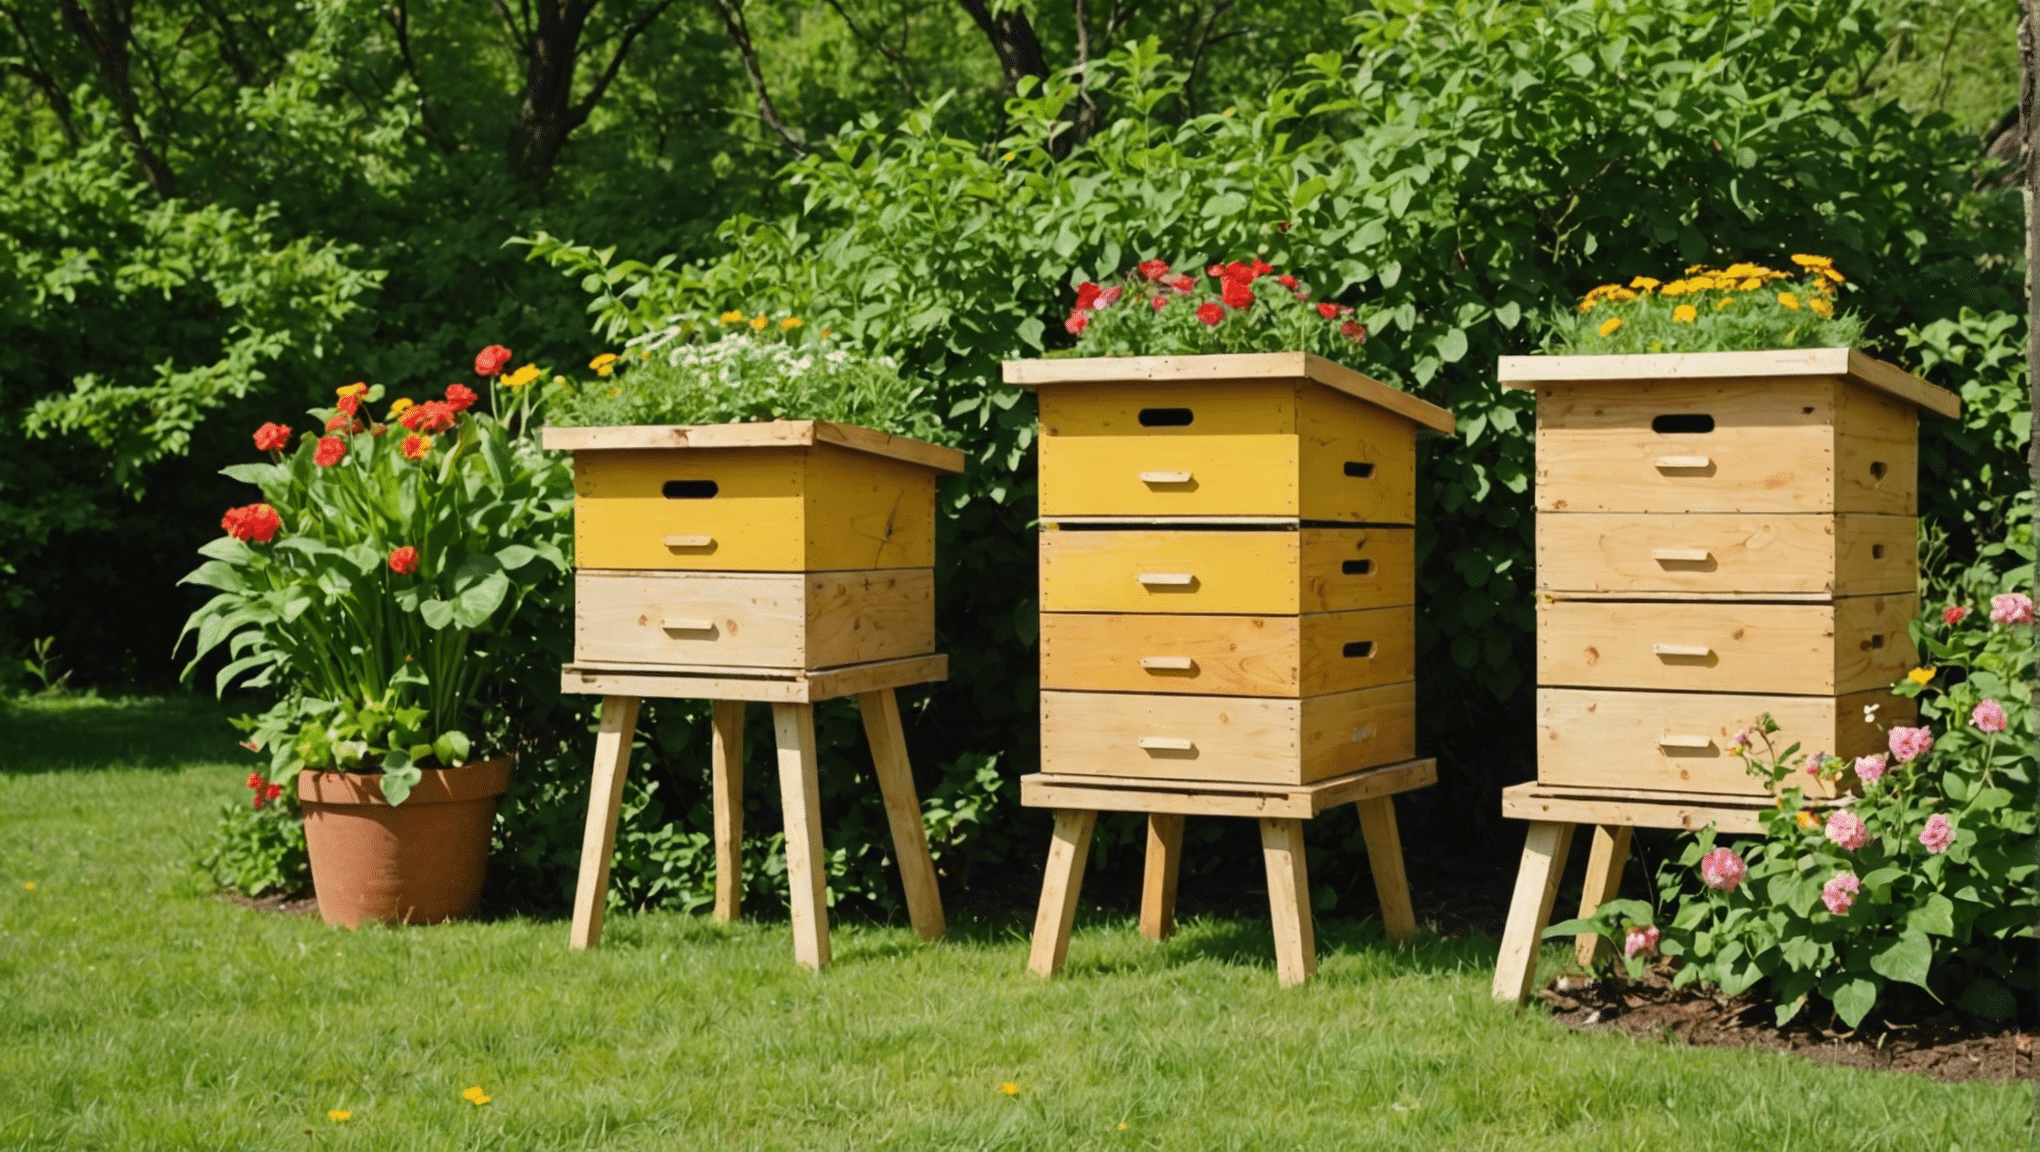 objevte výhody používání úlových boxů a jak mohou pozitivně ovlivnit včelařské postupy a produkci medu.